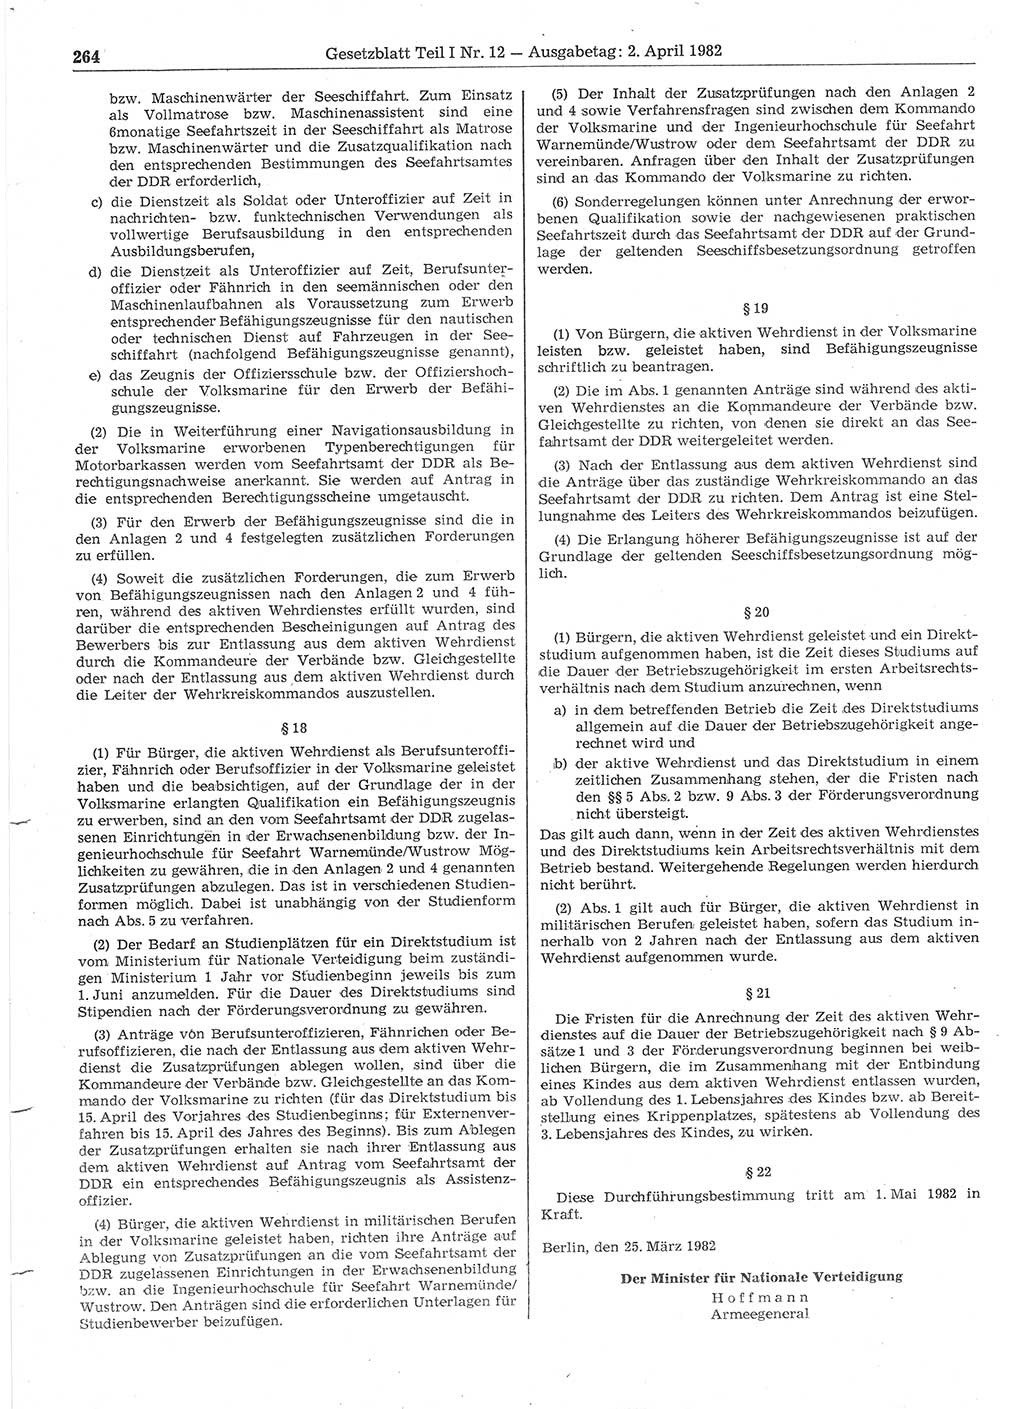 Gesetzblatt (GBl.) der Deutschen Demokratischen Republik (DDR) Teil Ⅰ 1982, Seite 264 (GBl. DDR Ⅰ 1982, S. 264)